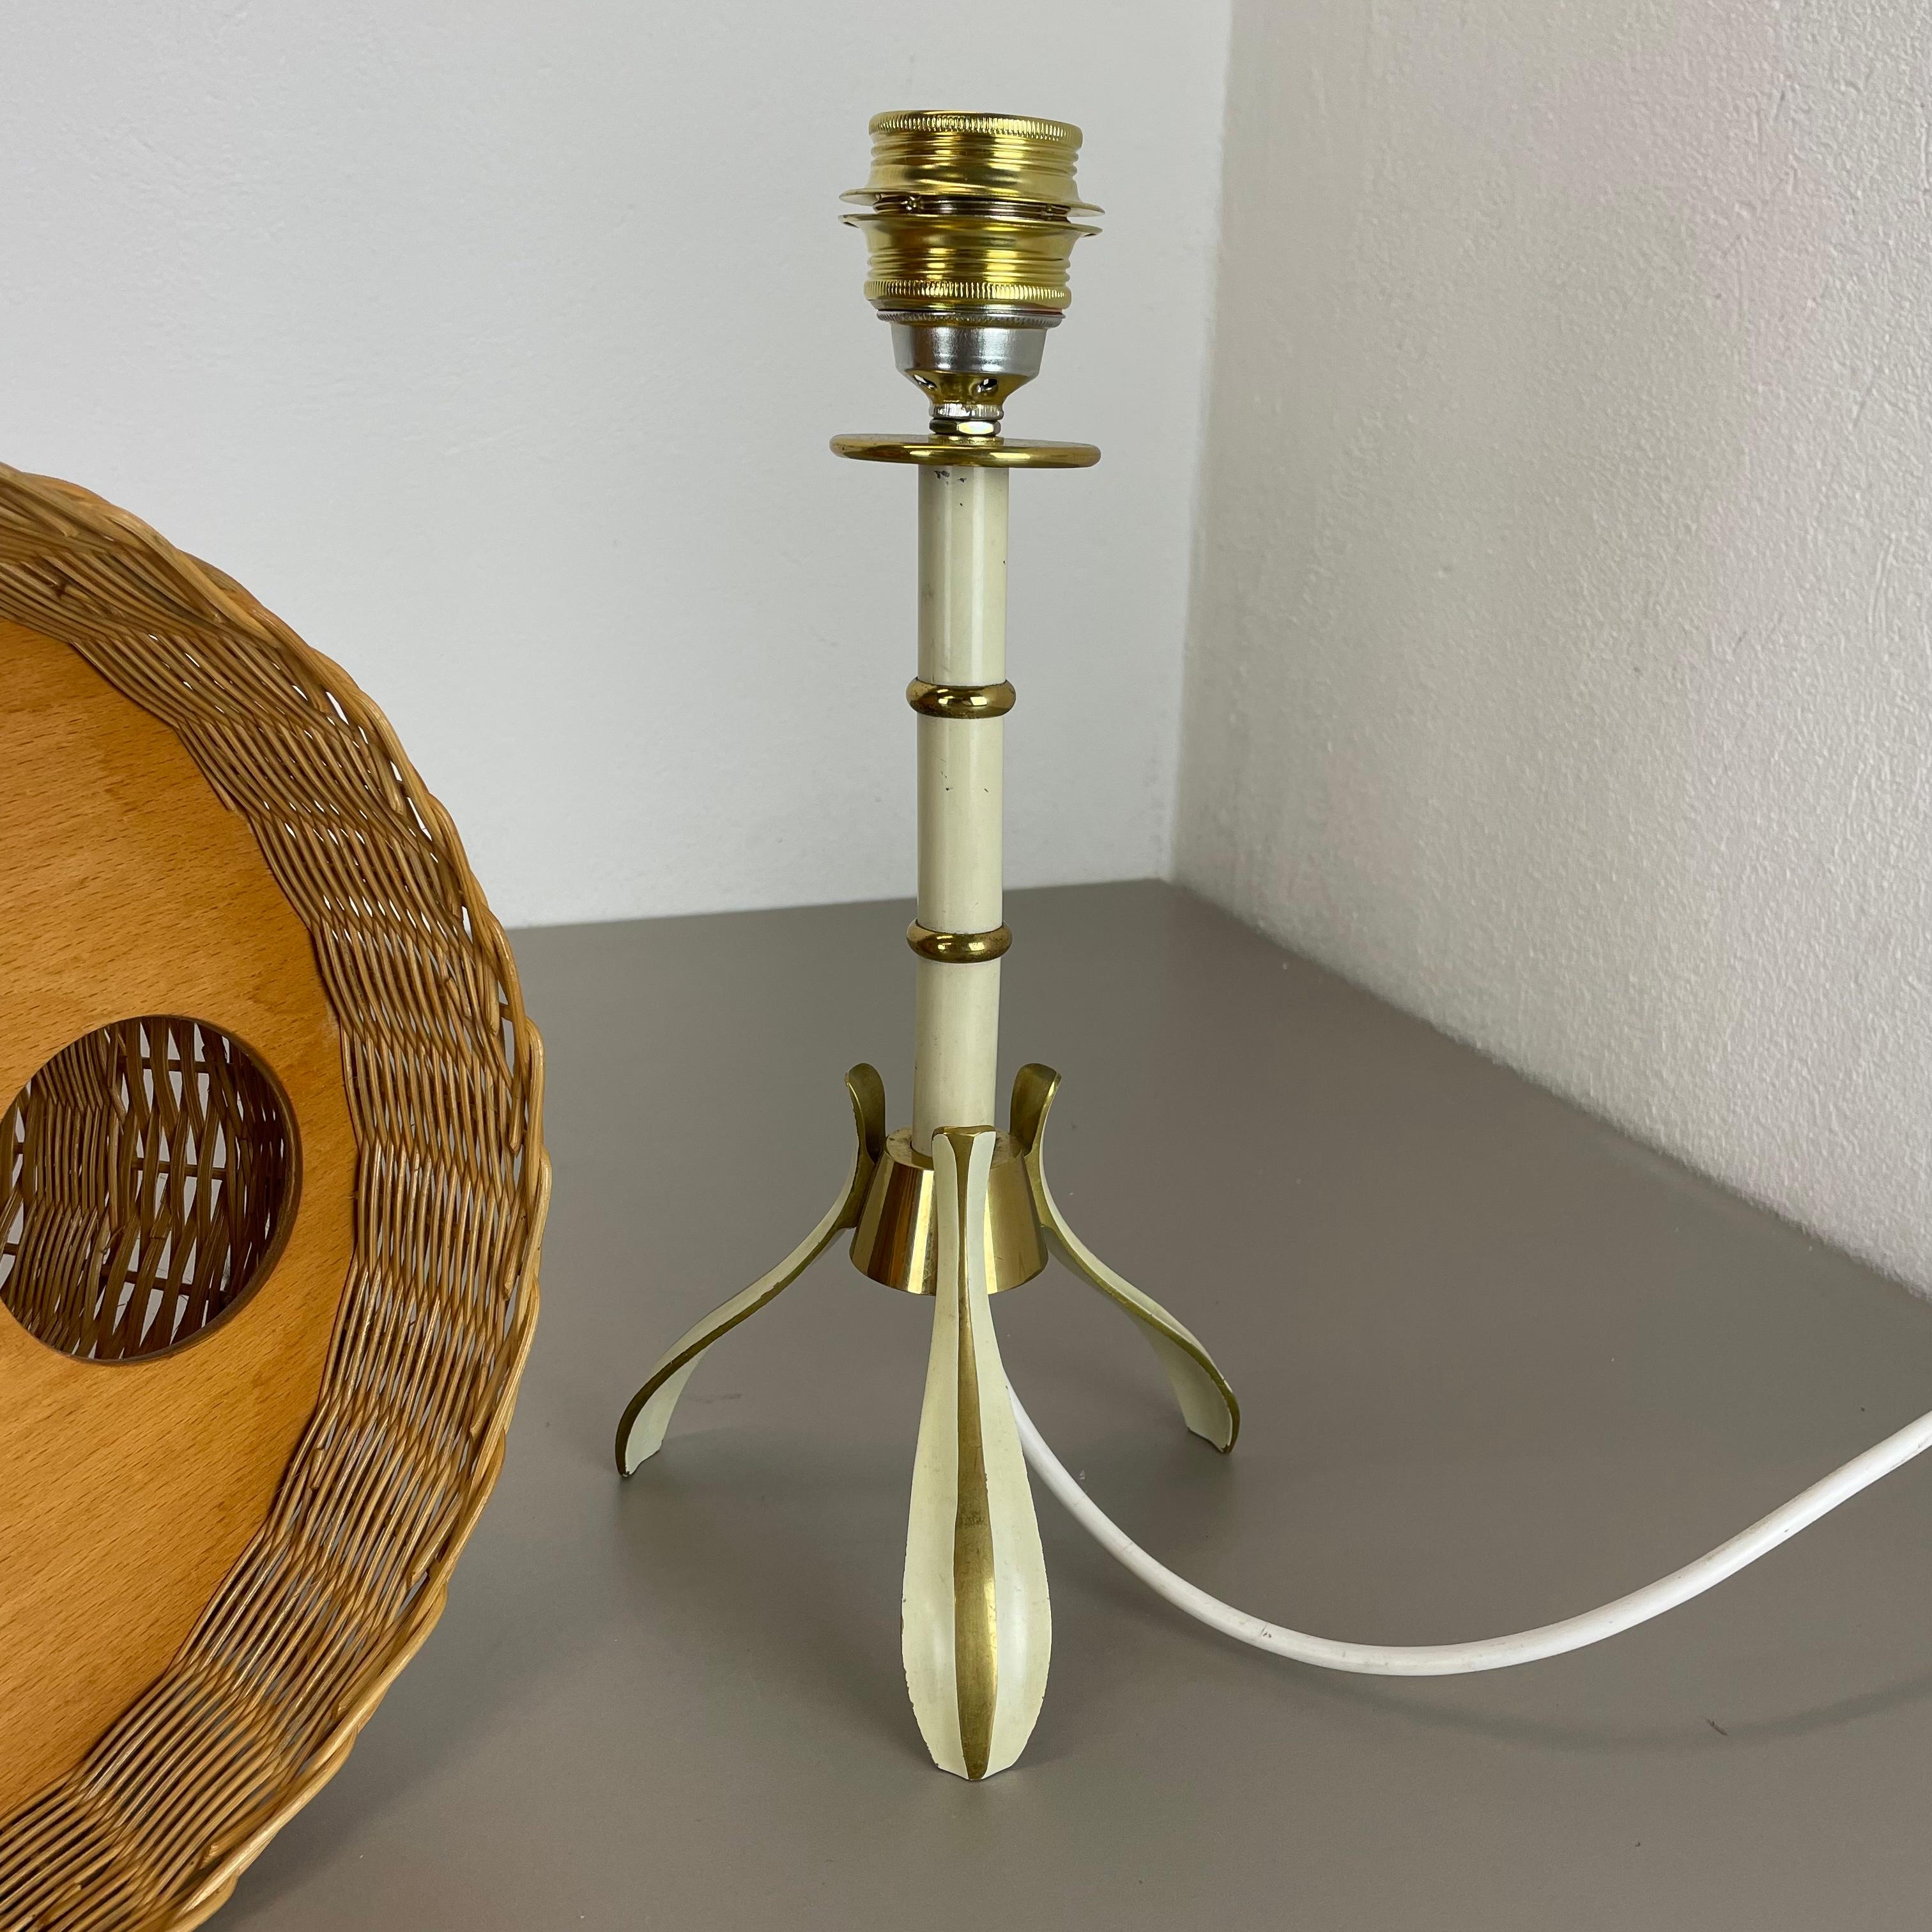 Original Rattan and Brass Table Light by Vereinigte Werkstätten München, Germany For Sale 3